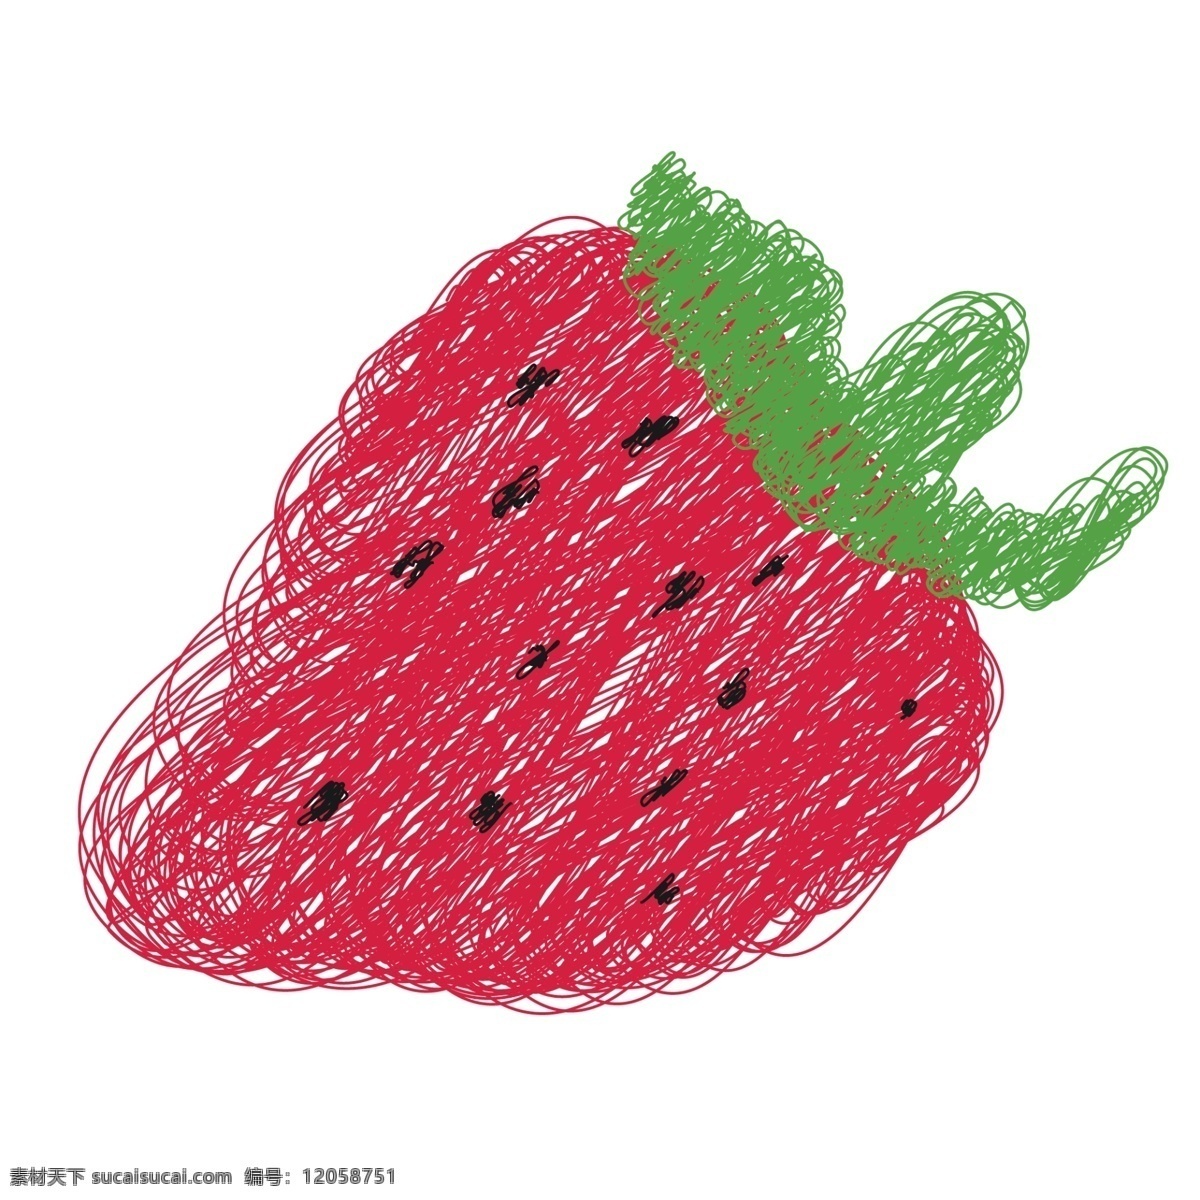 红色 草莓 免 抠 图 红色美食 手绘水果 线条笔画 绿色果实 新鲜美味 梨子 黄色 线条 水果 免抠图